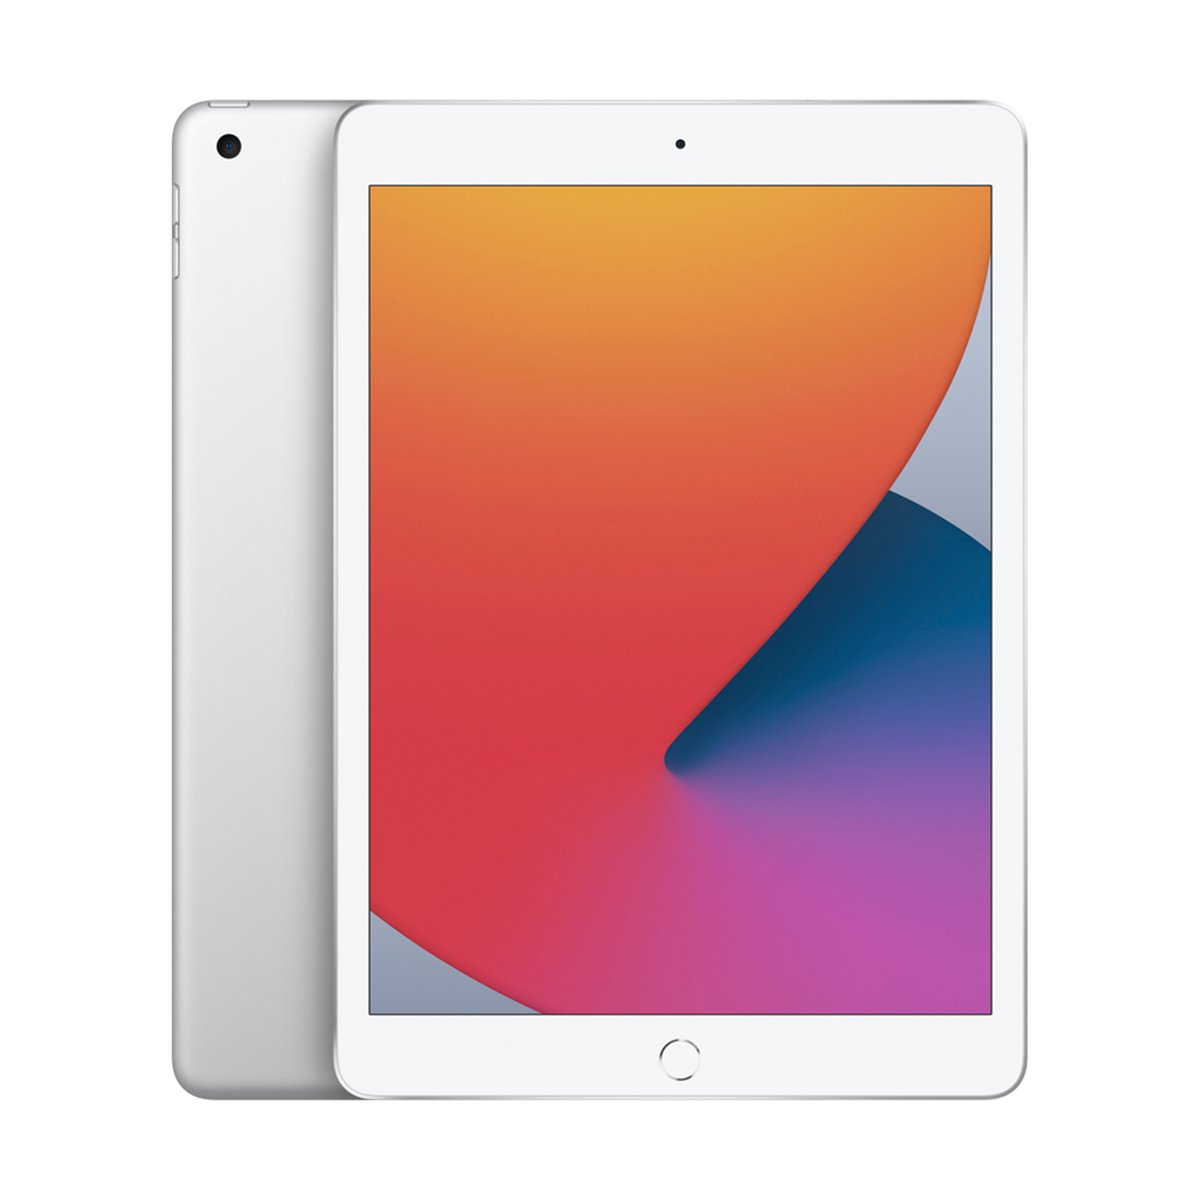 Apple iPad 10.2inch Wi-Fi (2020 - 8th Gen) 32GB Silver